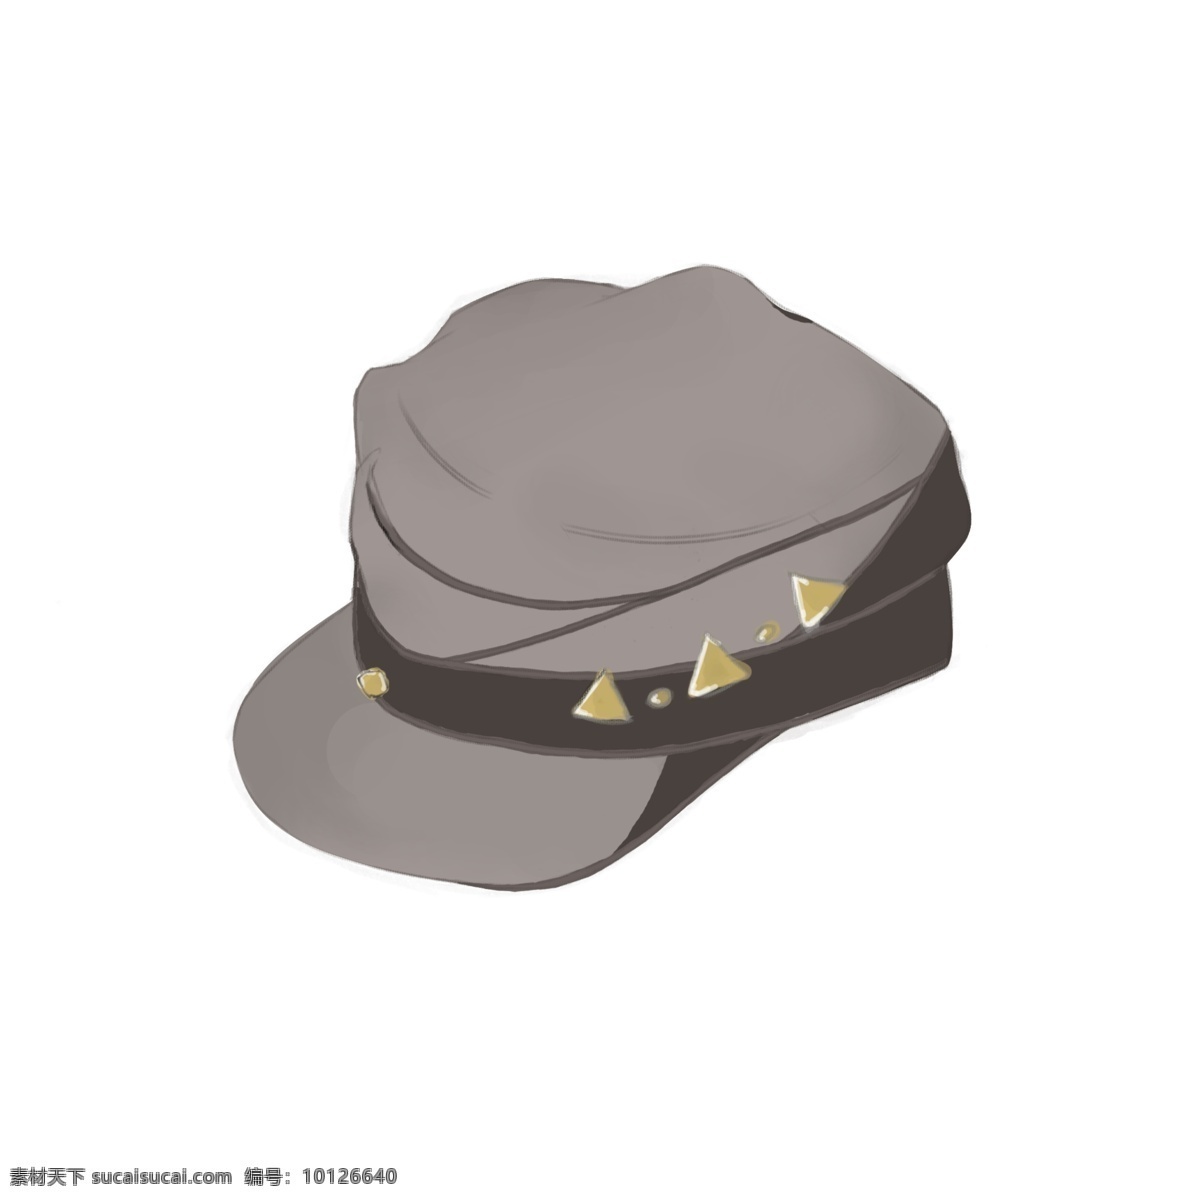 灰色 金属 亮片 帽子 灰色帽子 帽子装饰 金属亮片 遮阳帽 鸭舌帽 简约 帽子图案 流行 配饰 包装 创意 卡通插画